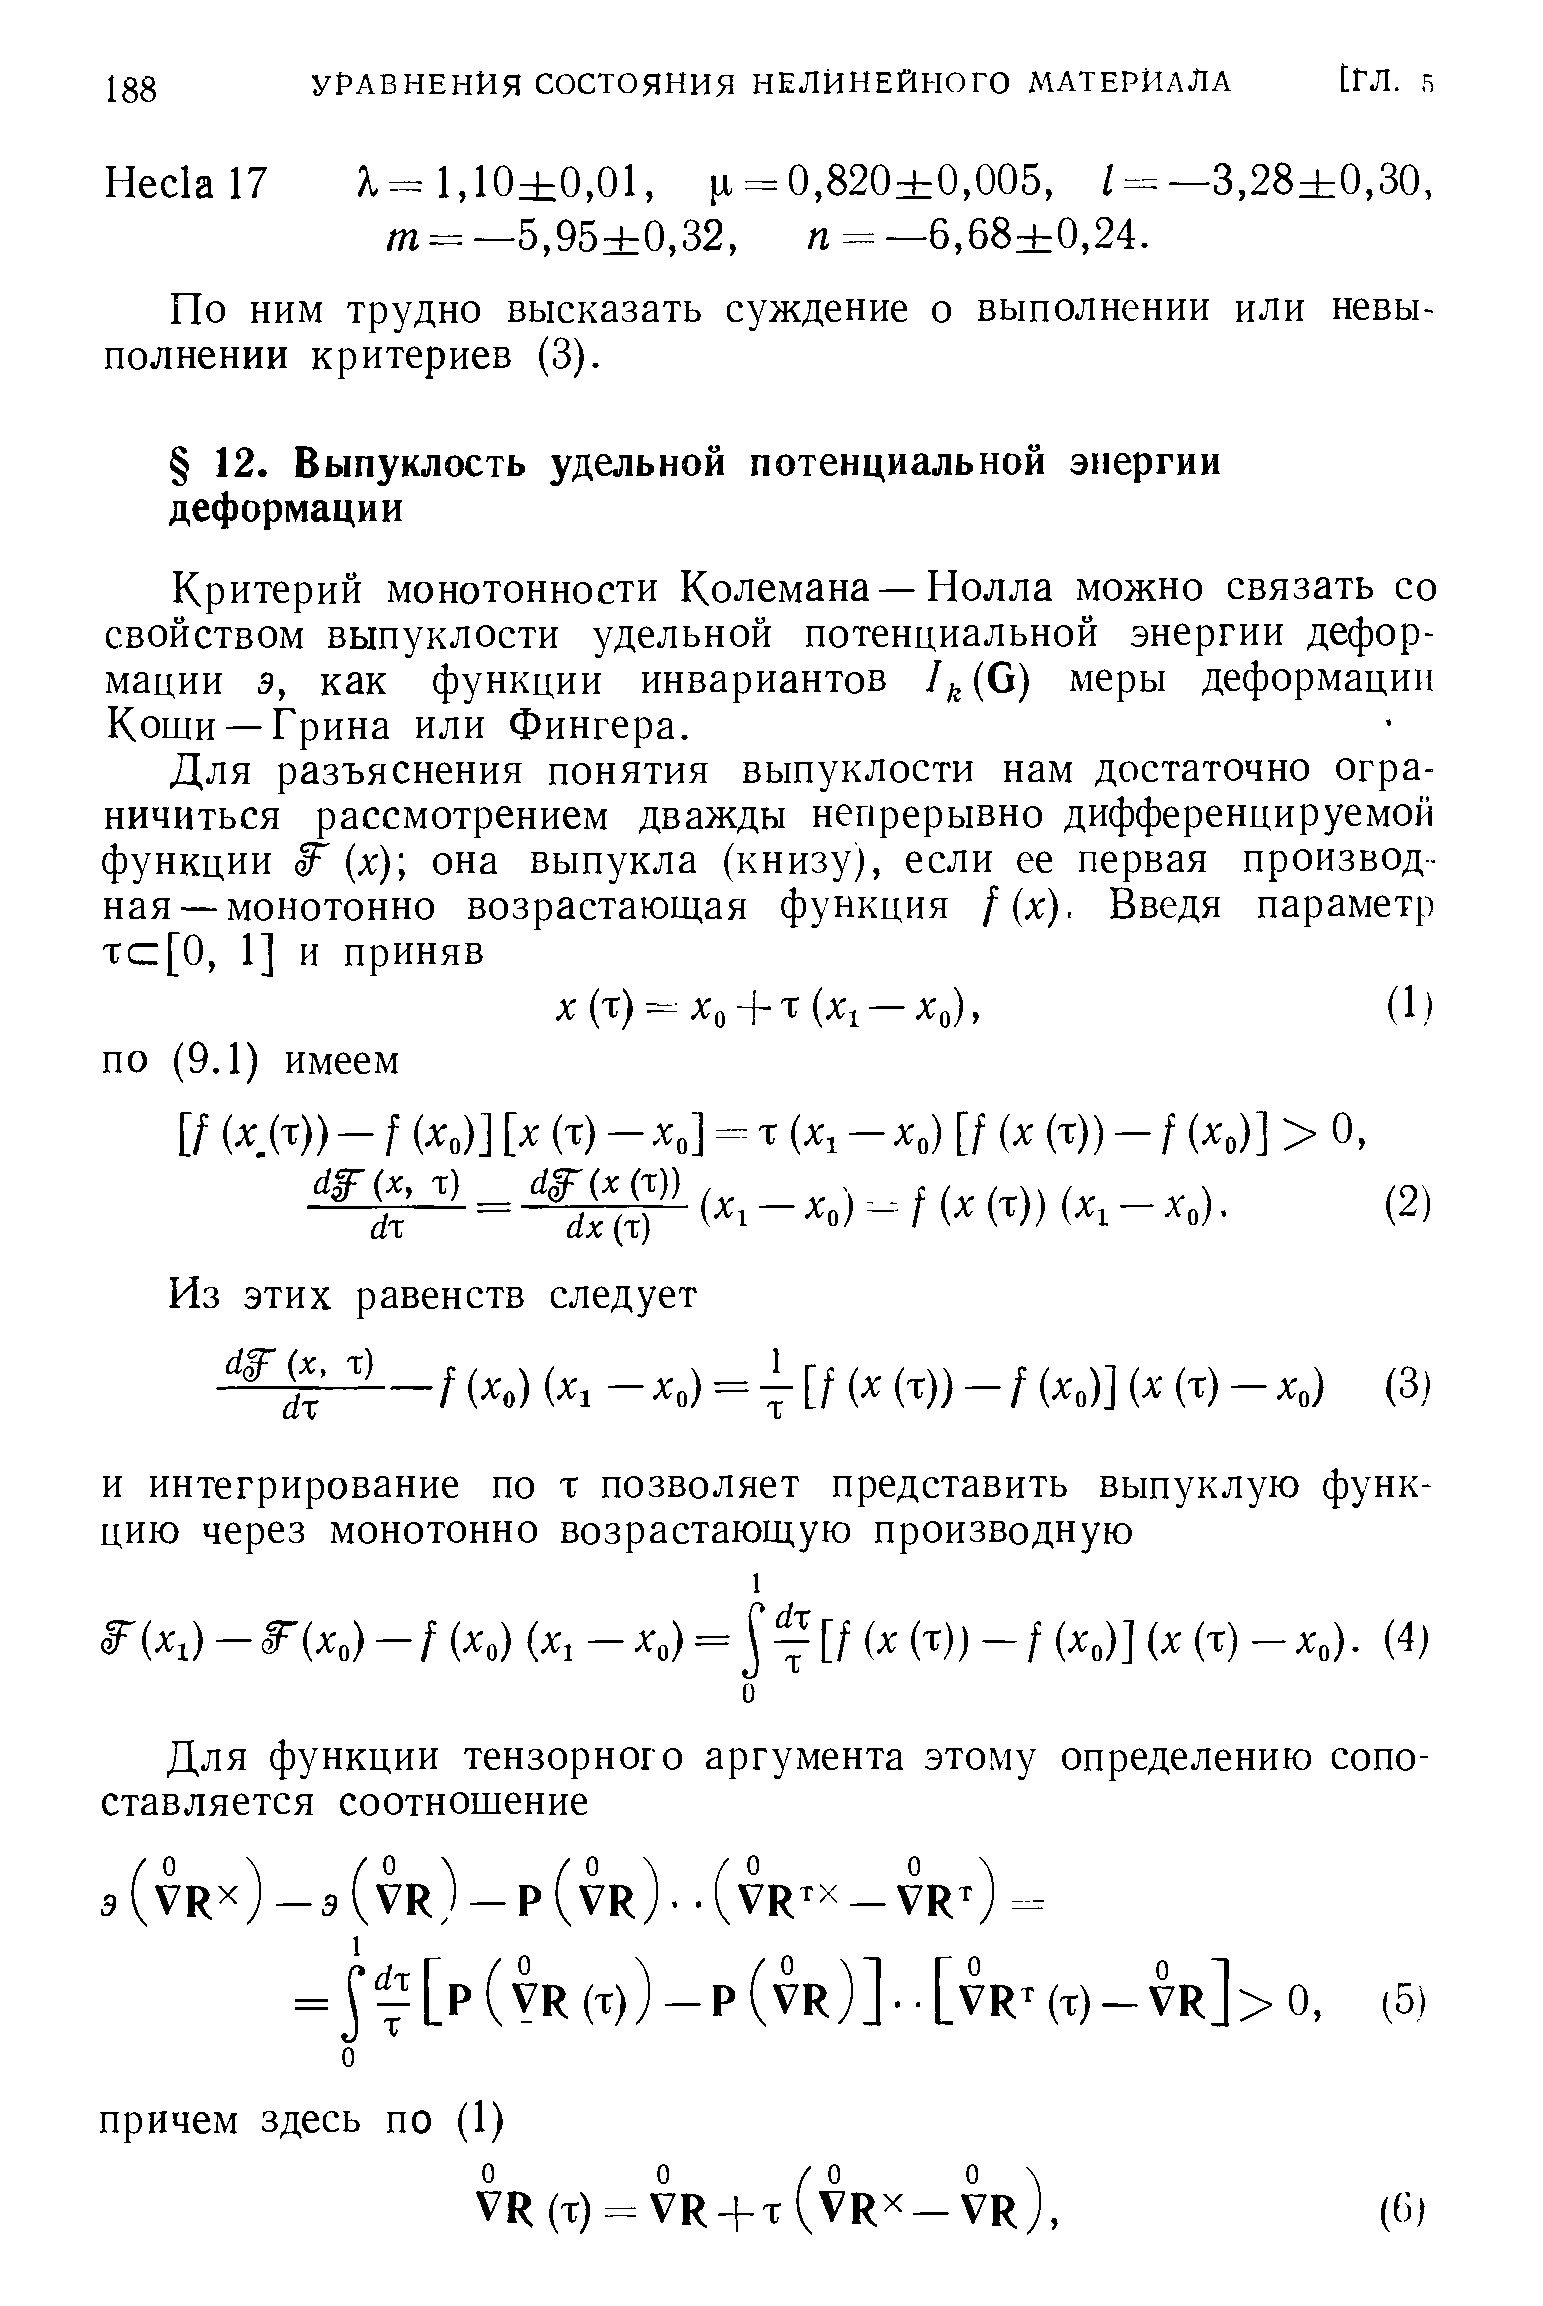 Критерий монотонности Колемана —Нолла можно связать со свойством выпуклости удельной потенциальной энергии деформации э, как функции инвариантов I (G) меры деформации Коши —Грина или Фингера.
